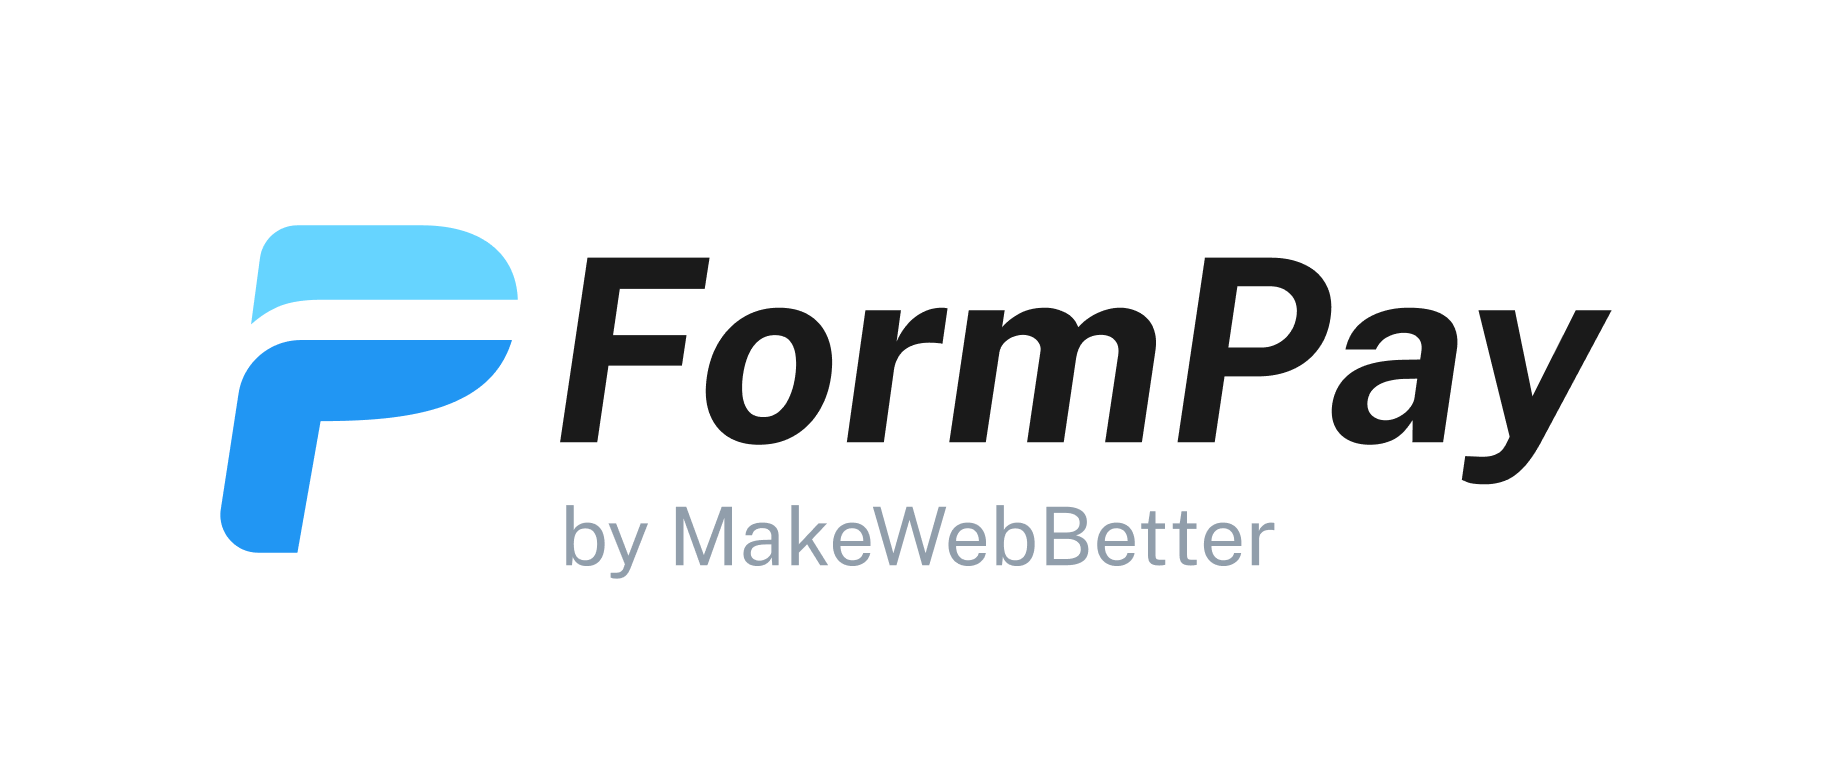 FormPay Logosu